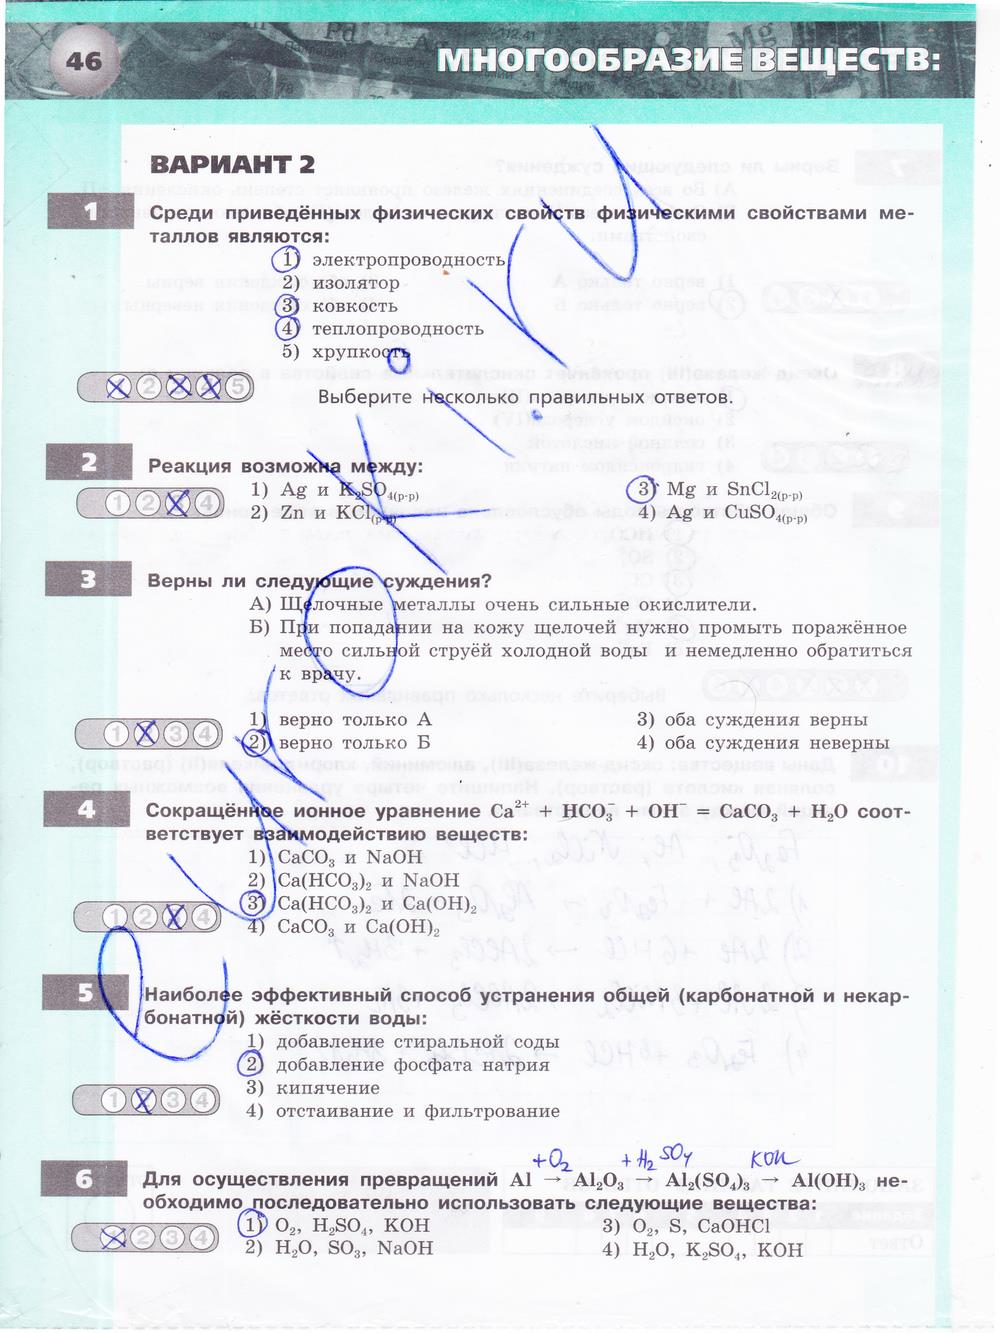 гдз 9 класс тетрадь-экзаменатор страница 46 химия Бобылева, Бирюлина